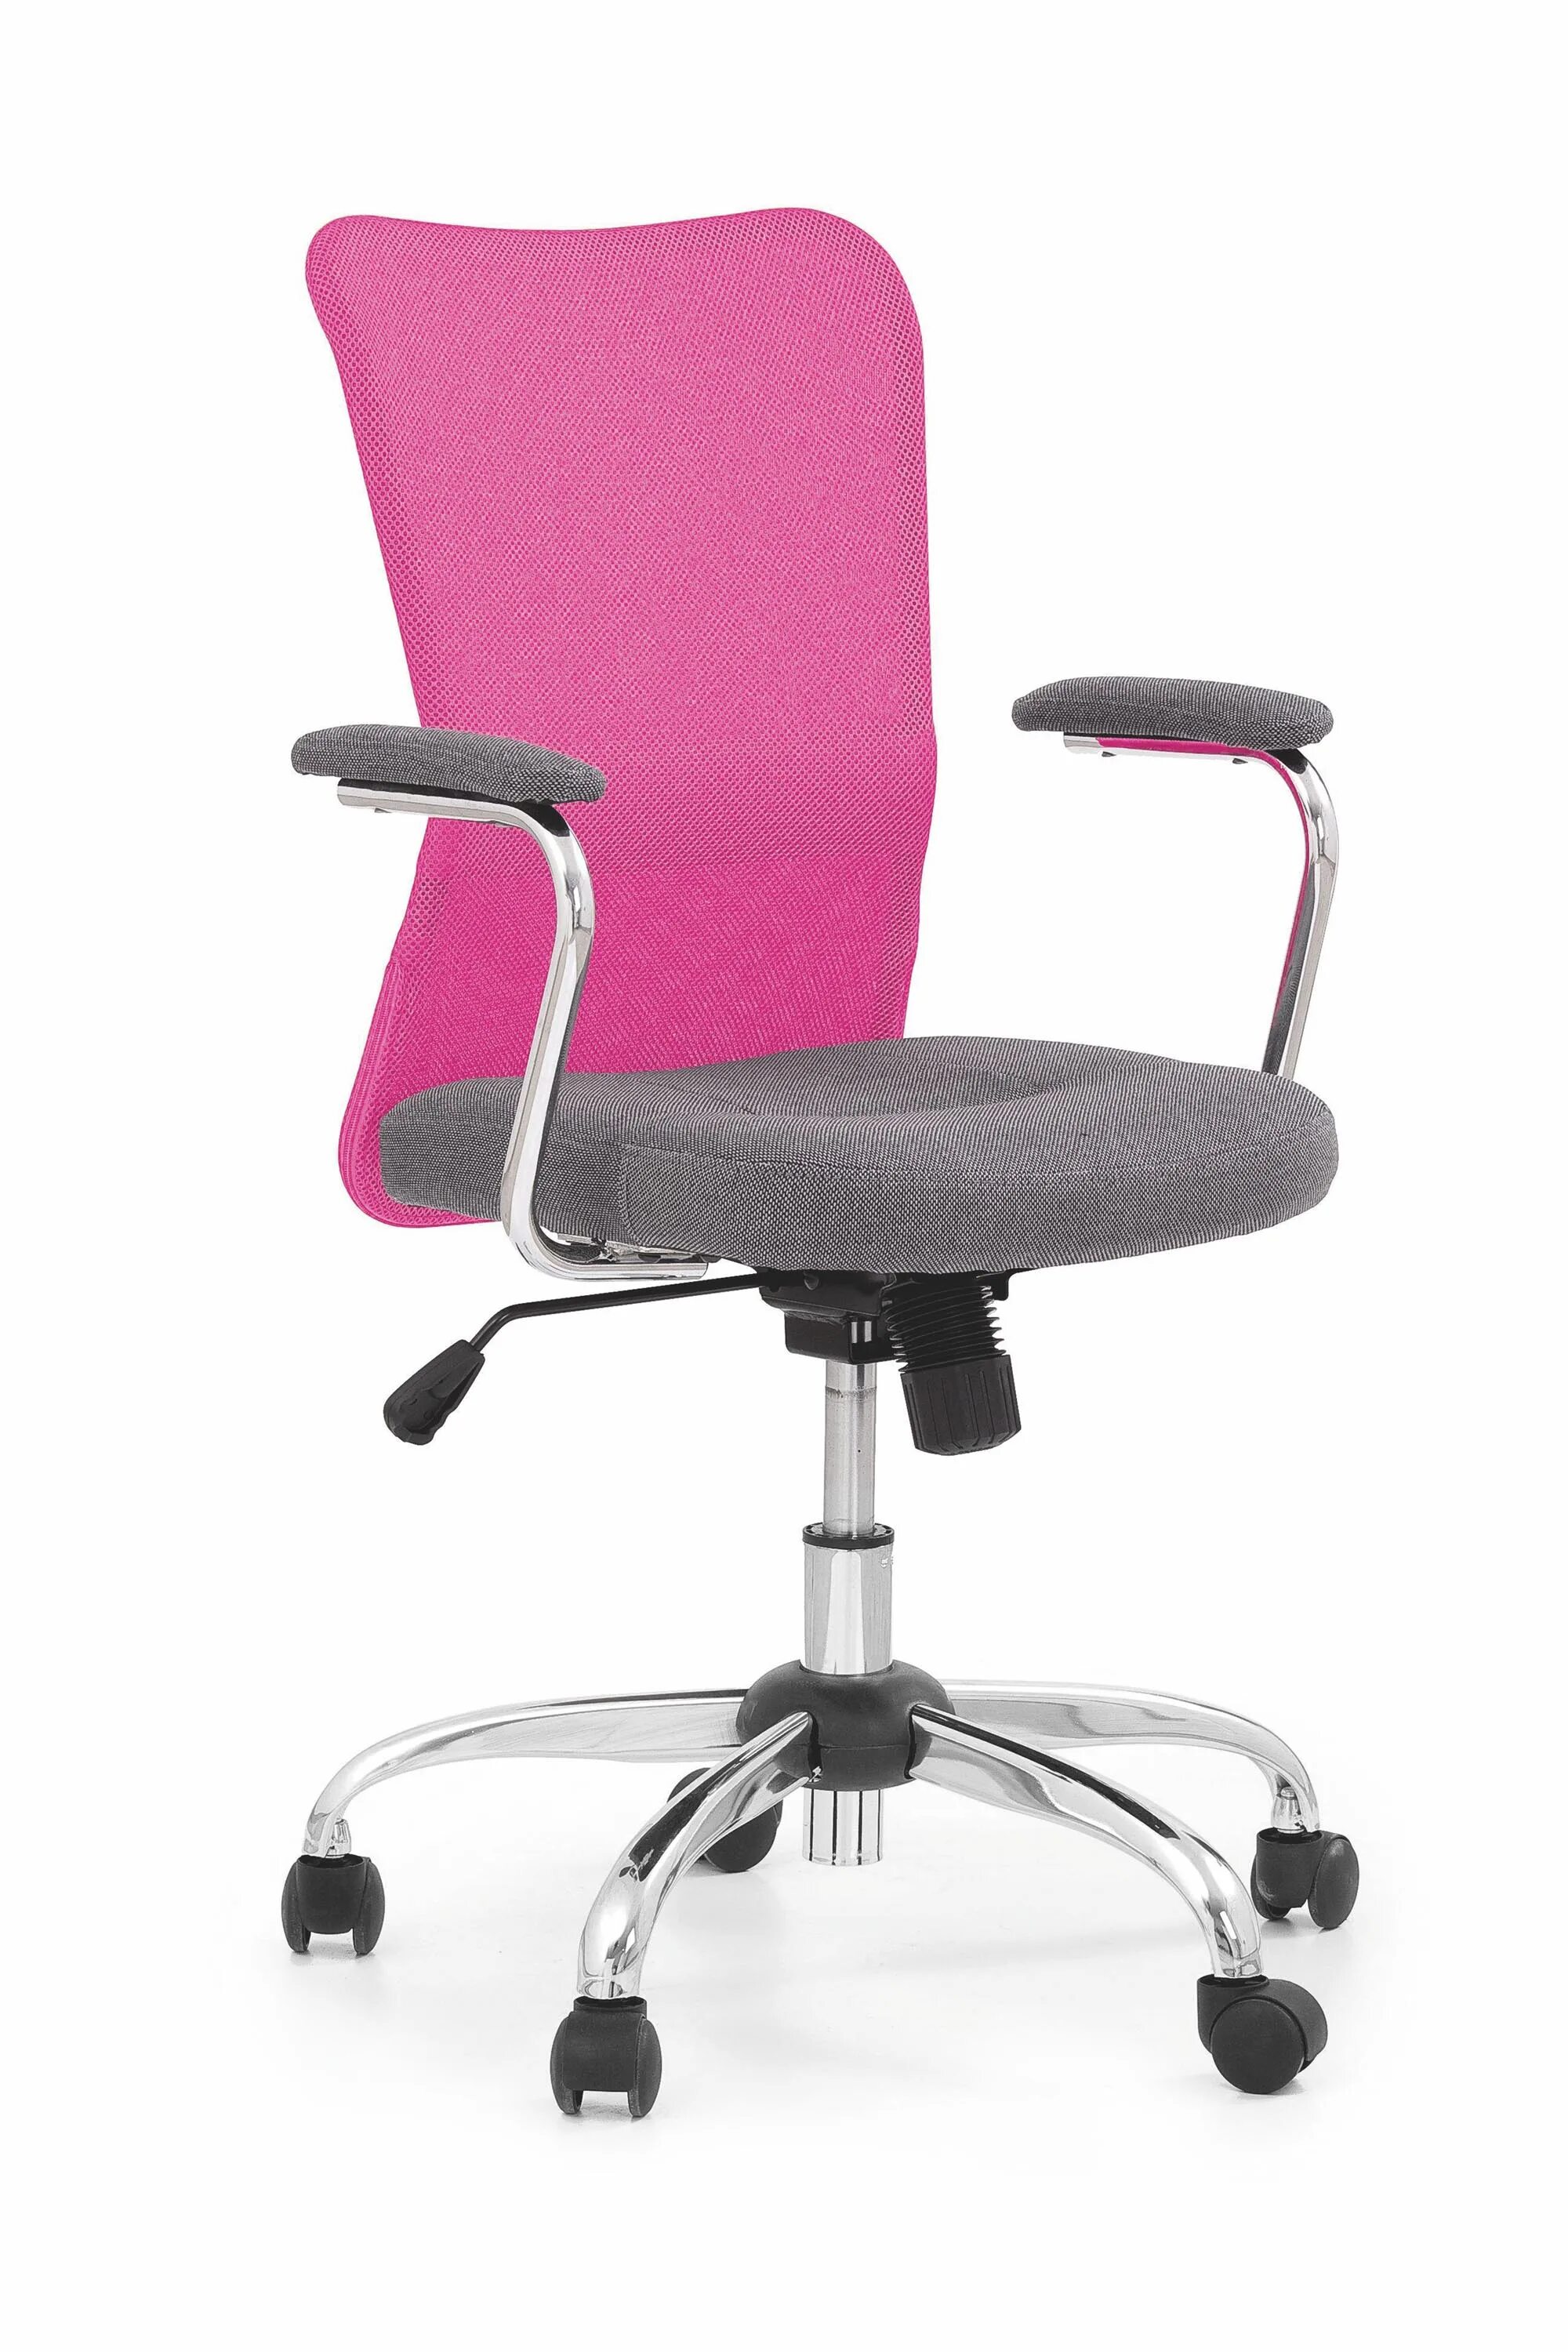 Офисный стул материал. Кресло офисное Седия Rosio-2. Кресло компьютерное Halmar fresco (розовый. Halmar кресло на колесиках. Кресло компьютерное BM 526.